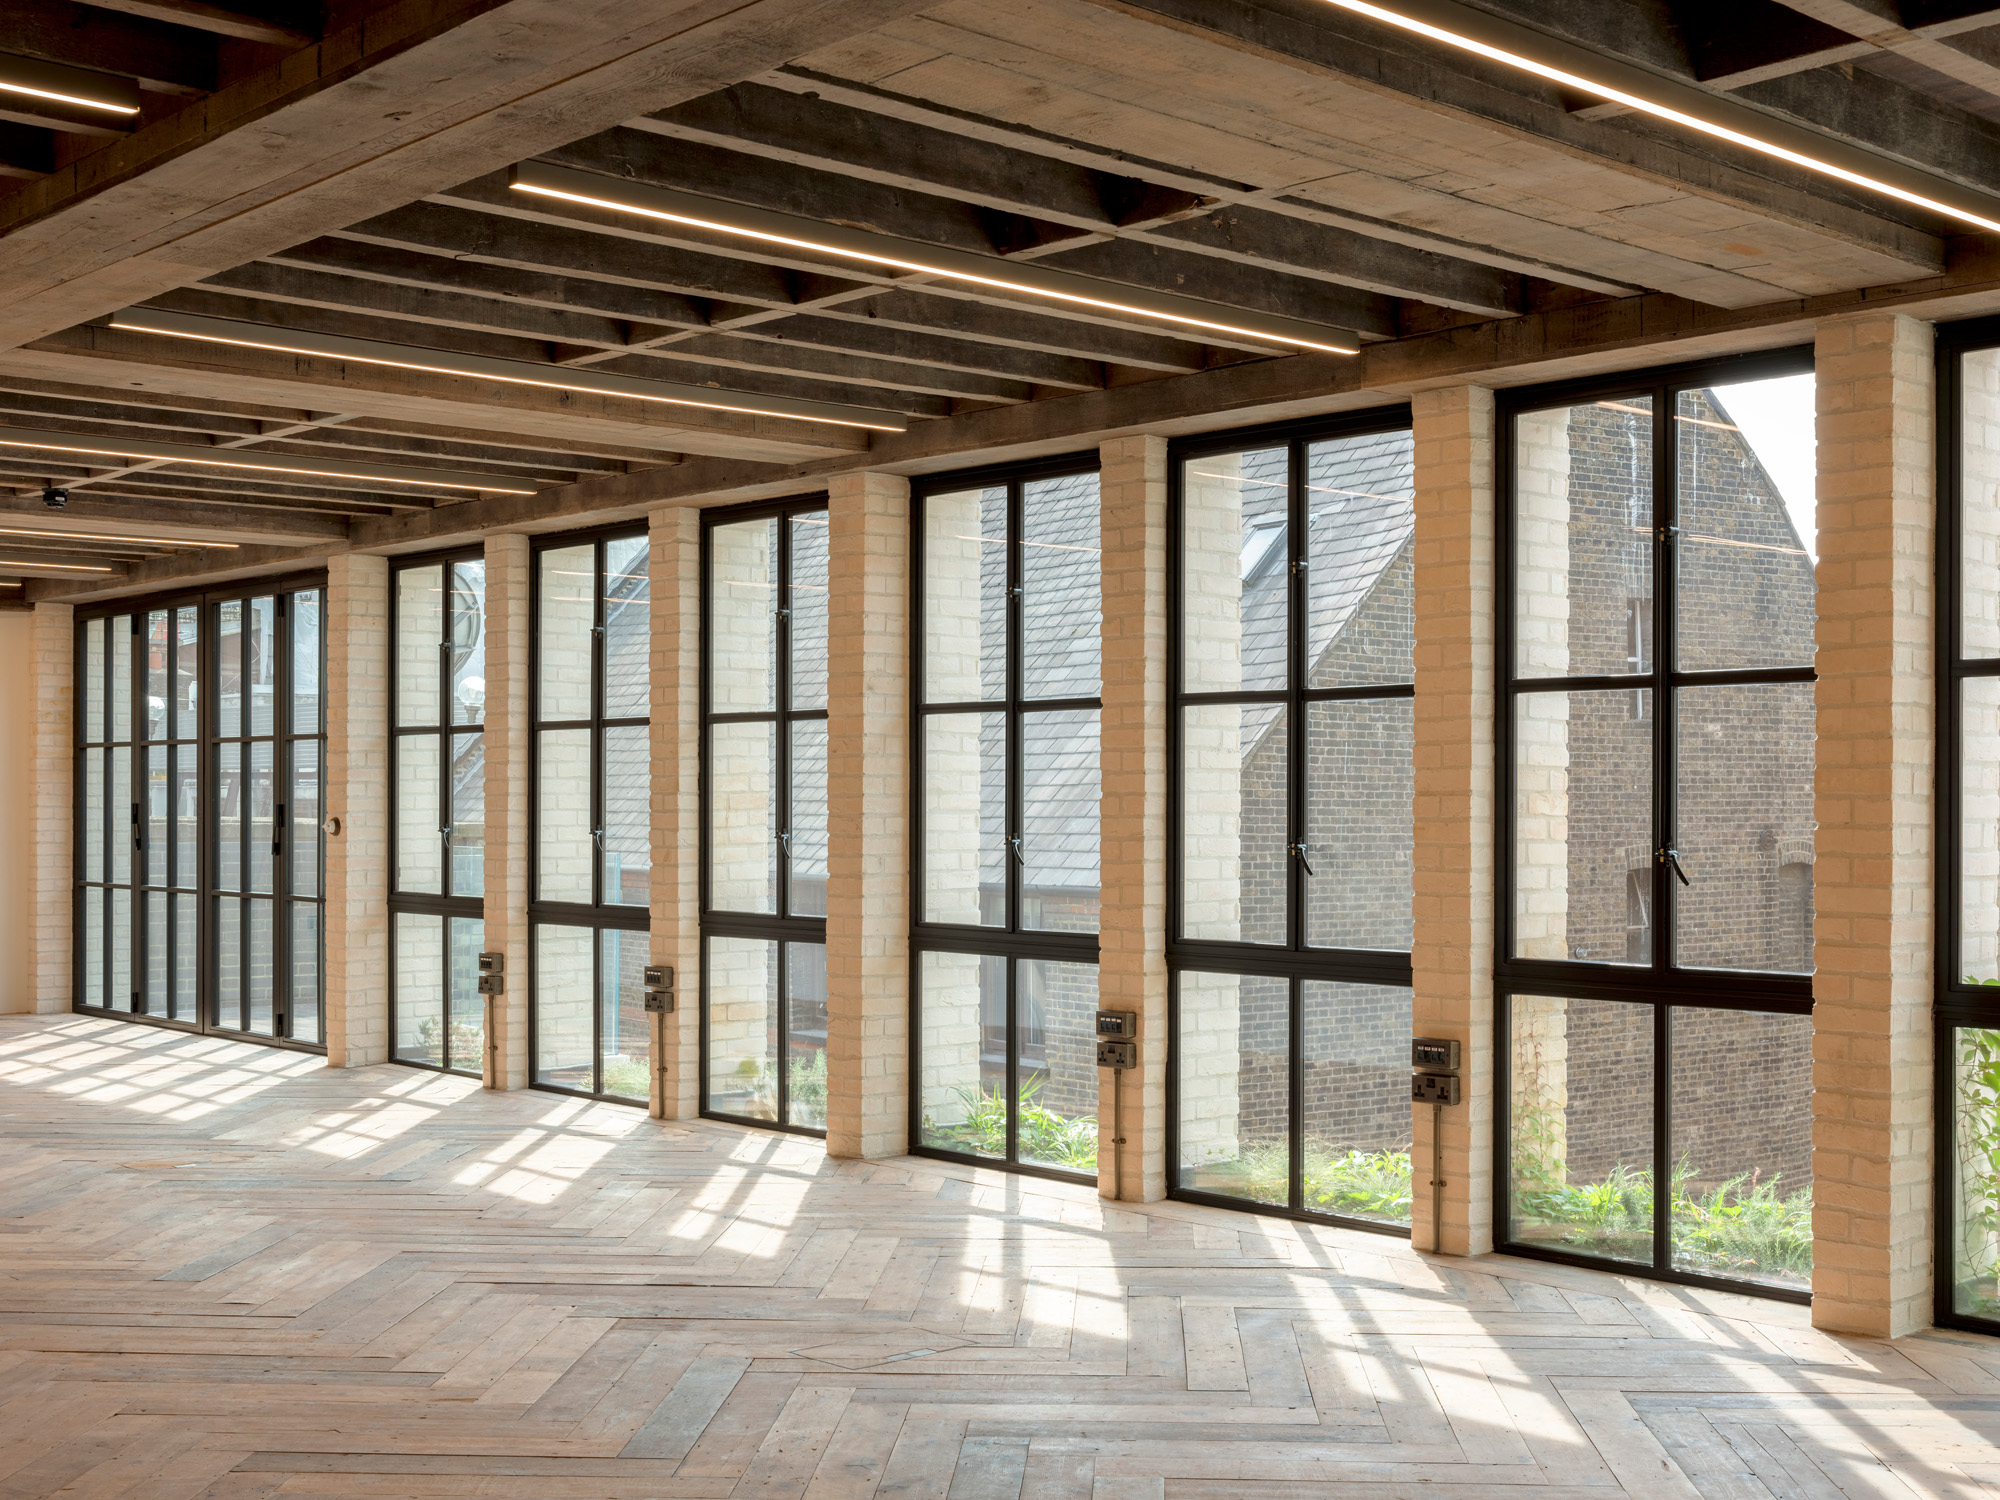 Windows by Morrow + Lorraine - contemporary architecture design studio in London